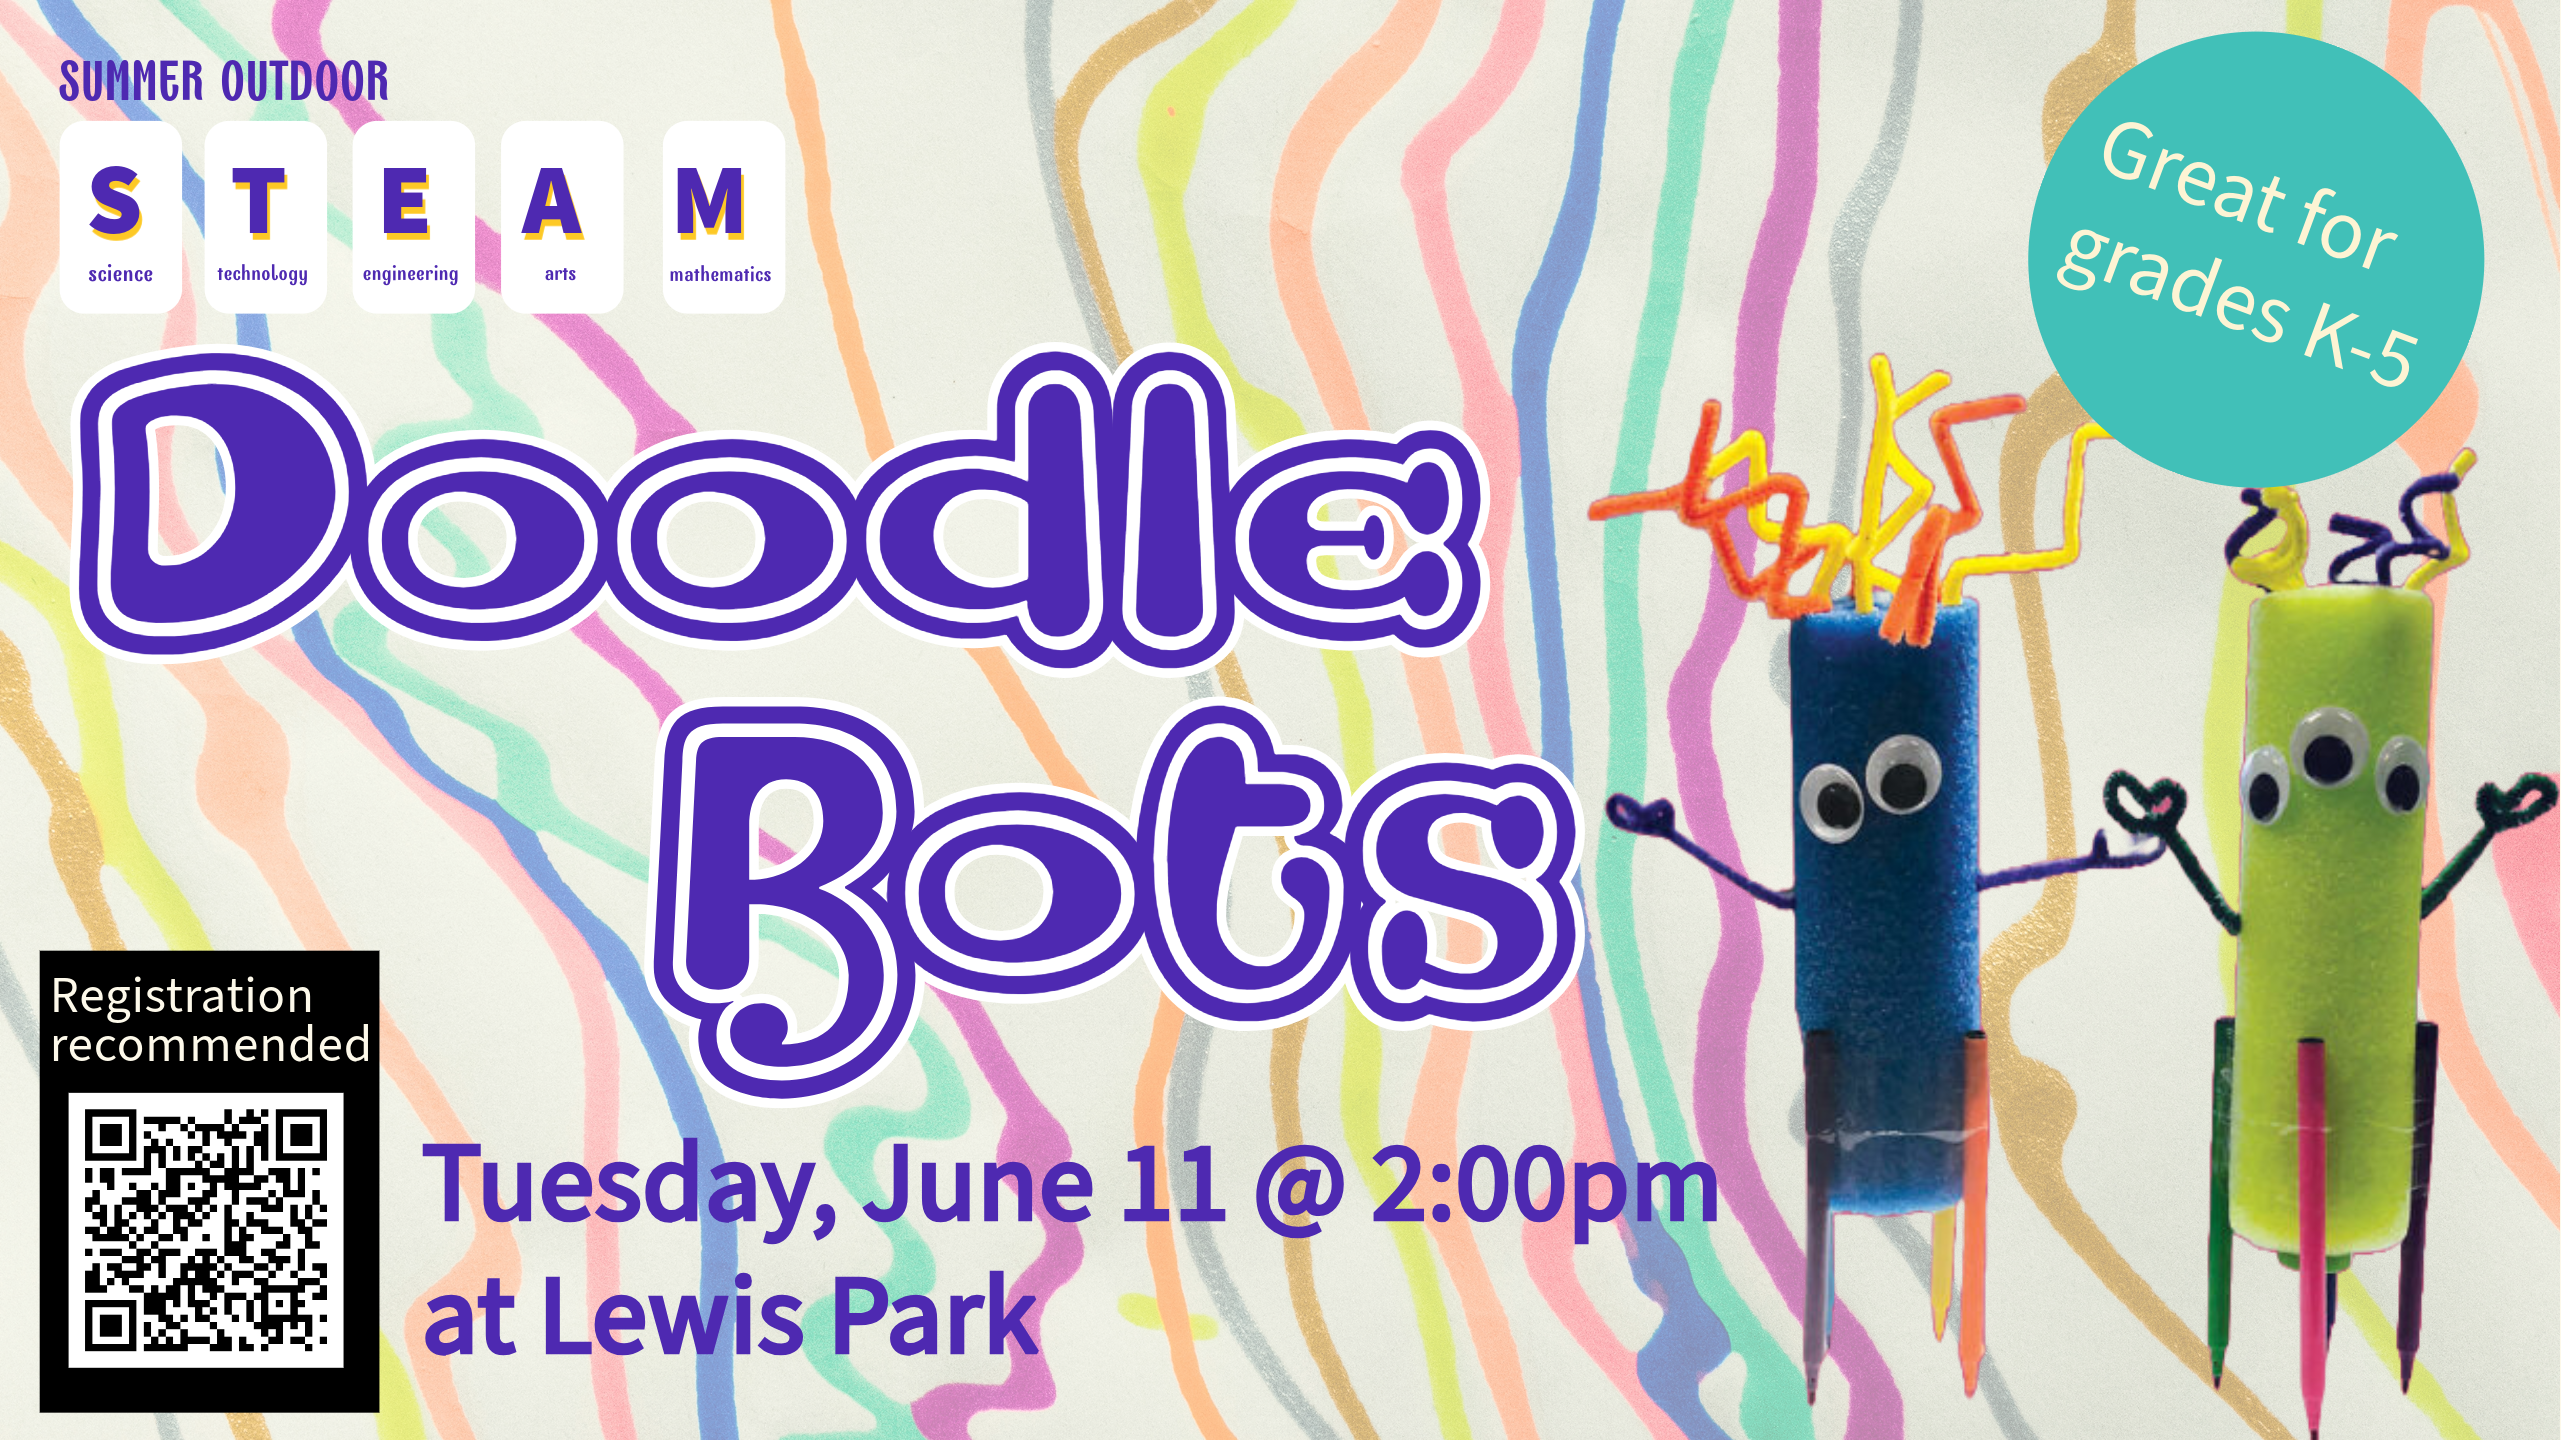 STEAM Doodle Bots